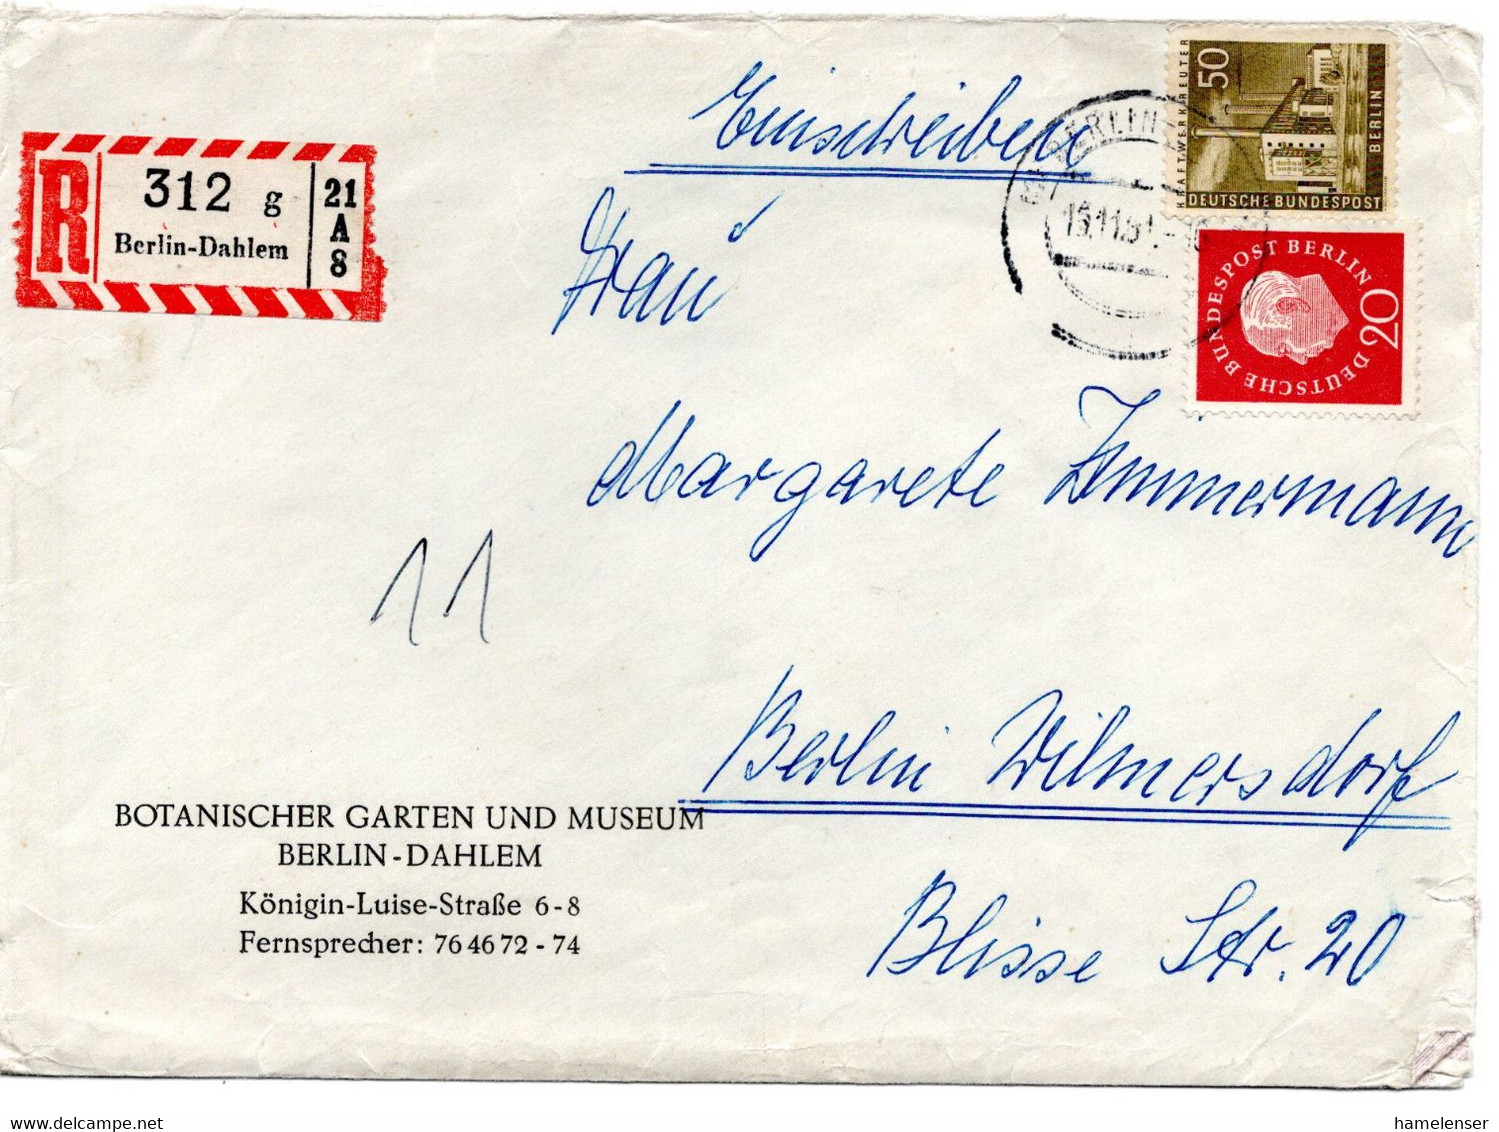 57771 - Berlin - 1959 - 50Pfg Bauten MiF A OrtsRBf BERLIN - Covers & Documents